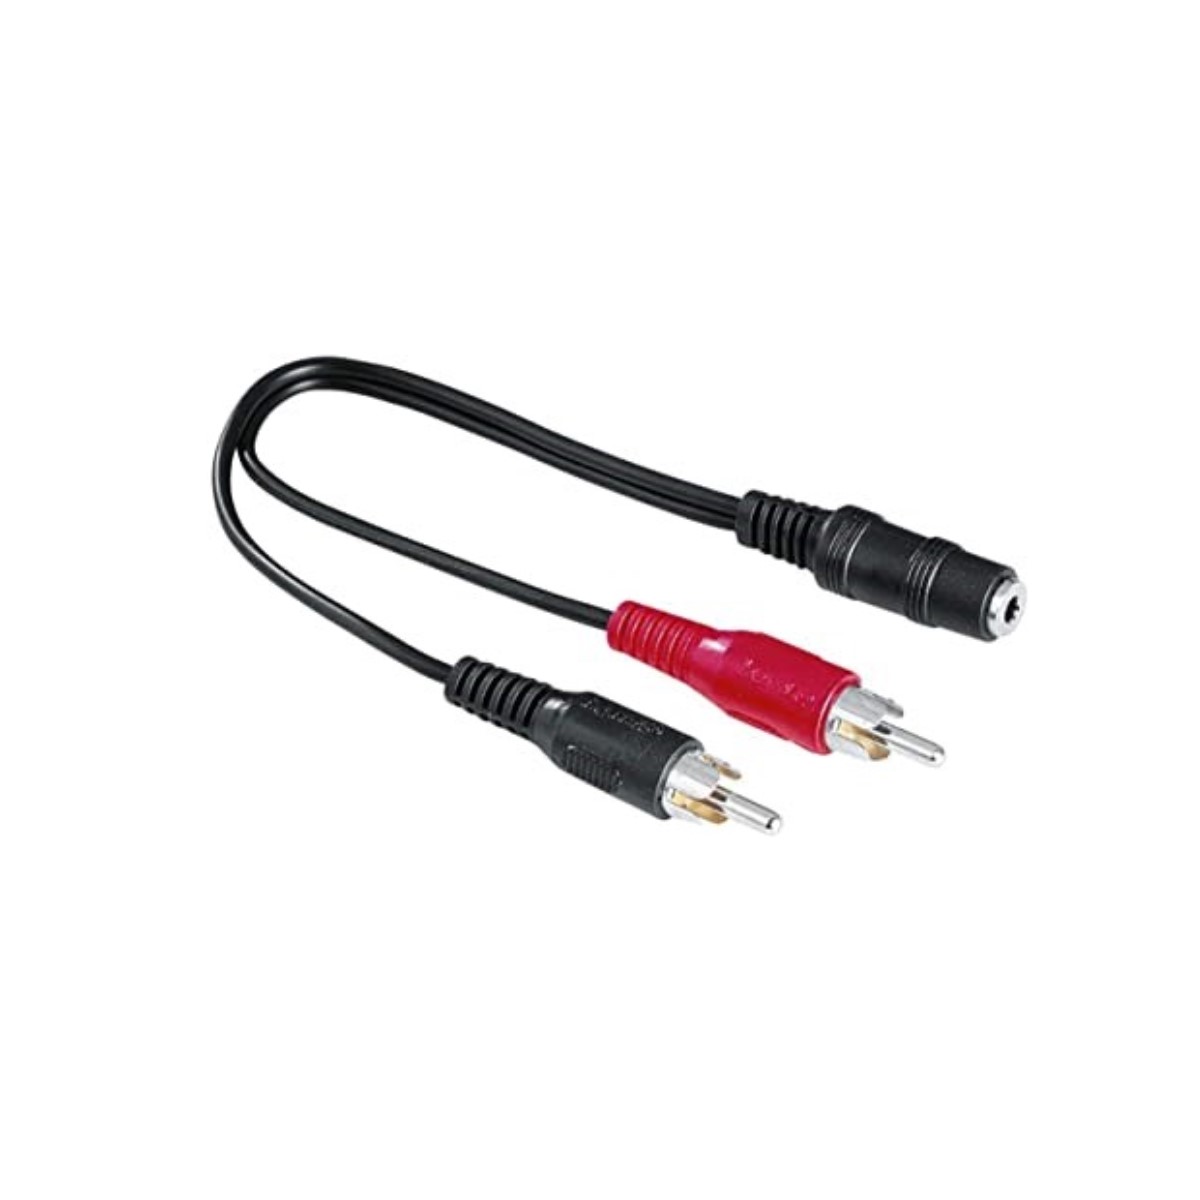 Cablu Audio Jack la 2 RCA Hama 00116011